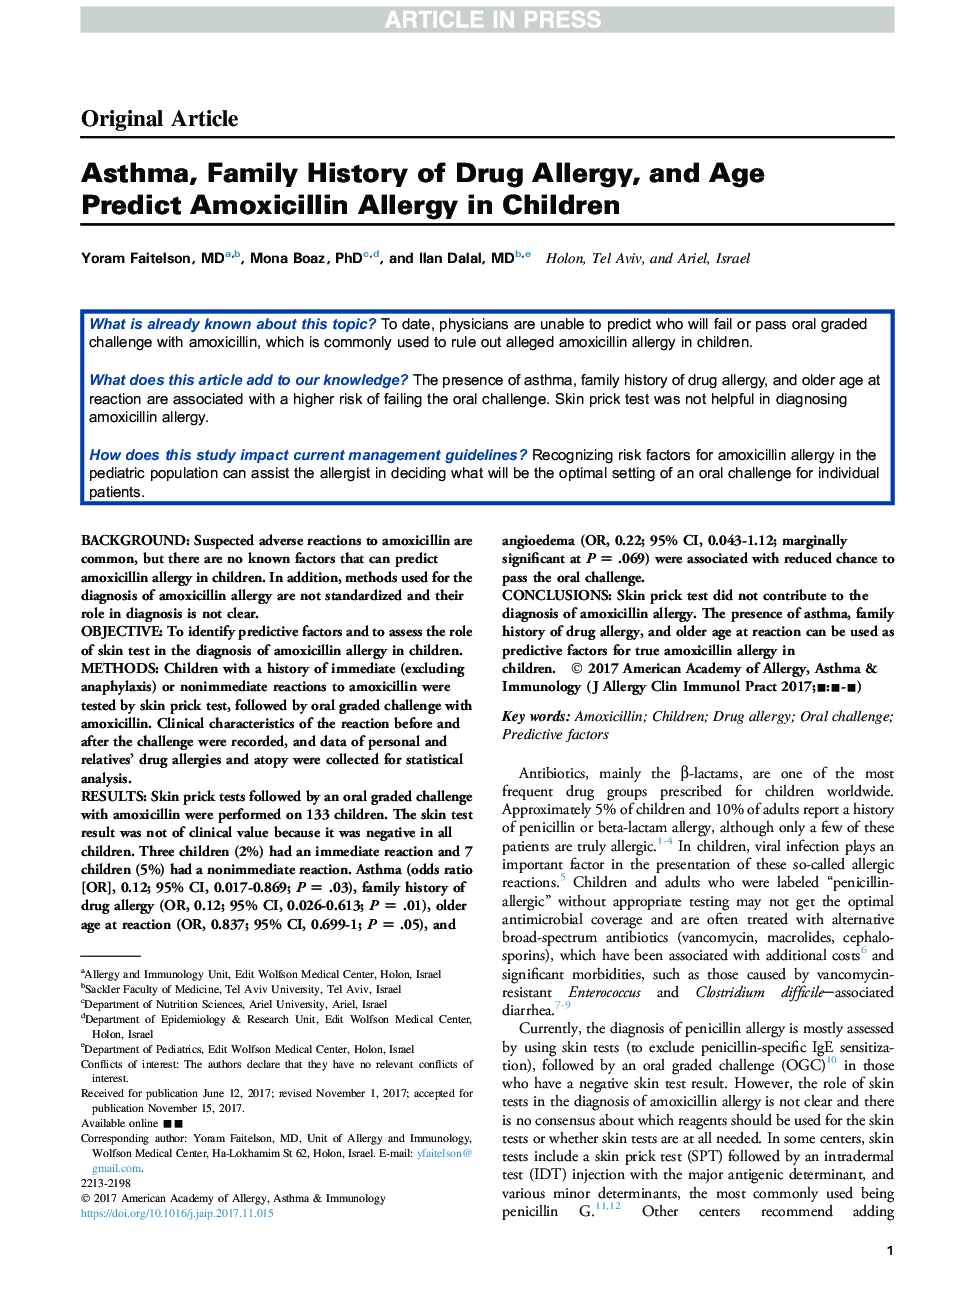 آسم، تاریخچه خانواده آلرژی مواد مخدر و پیش بینی آلودگی آموکسی سیلین در کودکان در کودکان 